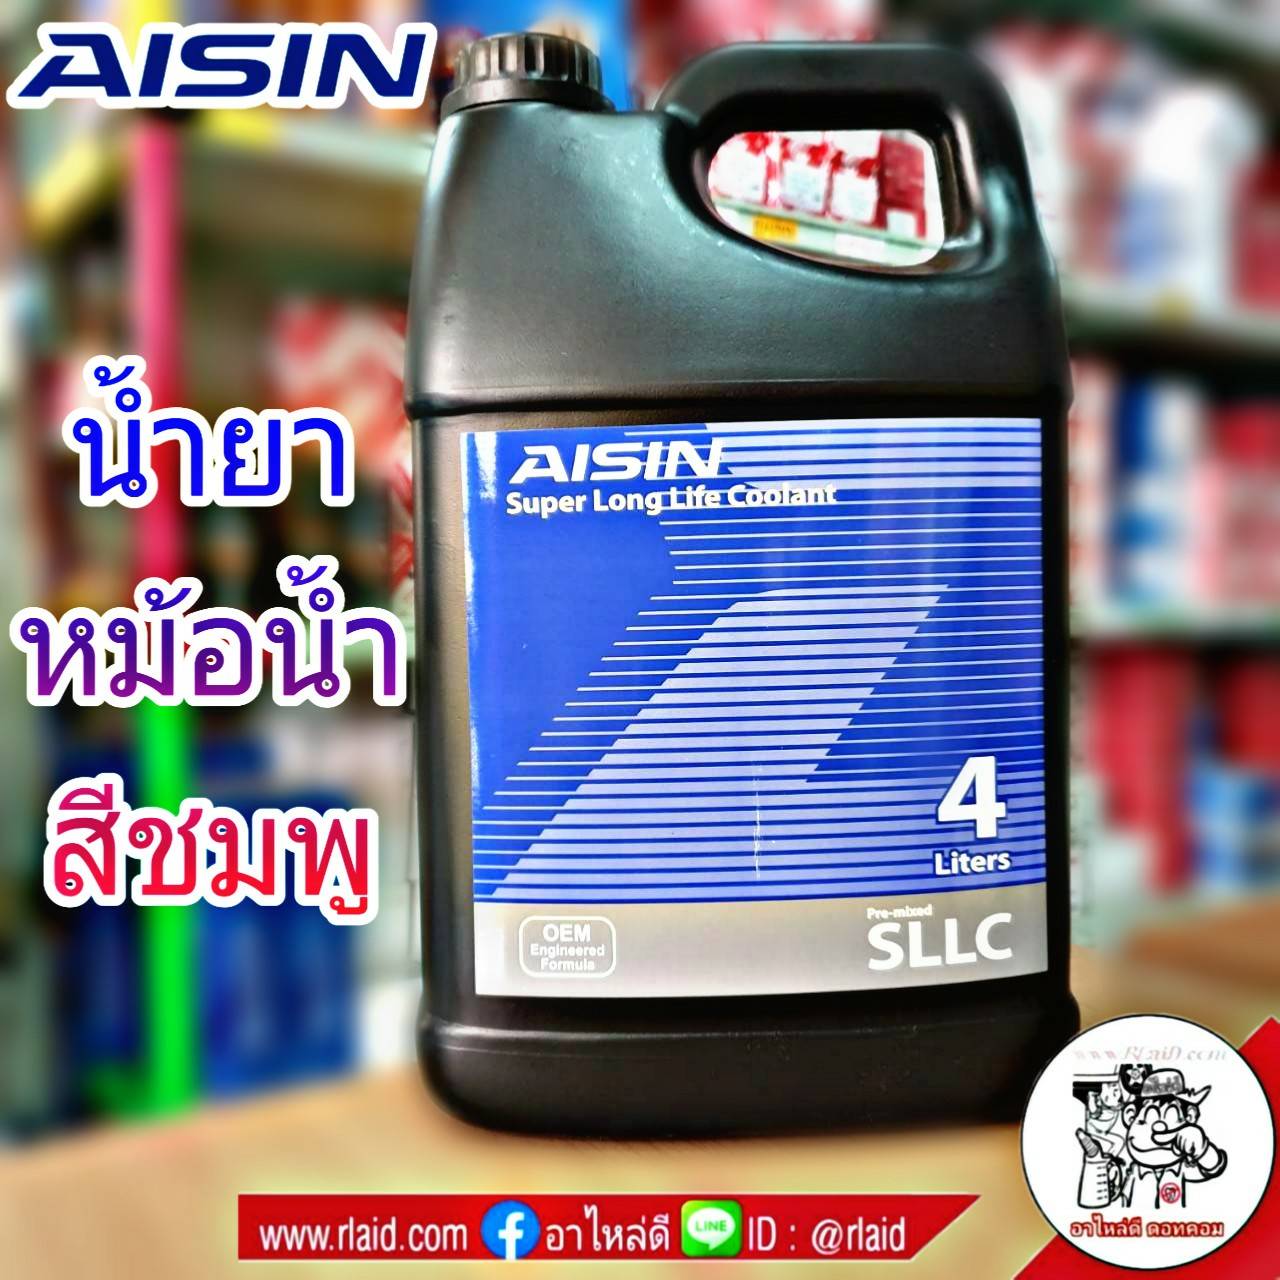 ข้อมูลประกอบของ คูลแลนท์ AISIN ไอซิน สีชมพู 4ลิตร น้ำยาหม้อน้ำ น้ำยาเติมหม้อน้ำ น้ำยาหล่อเย็น Coolant